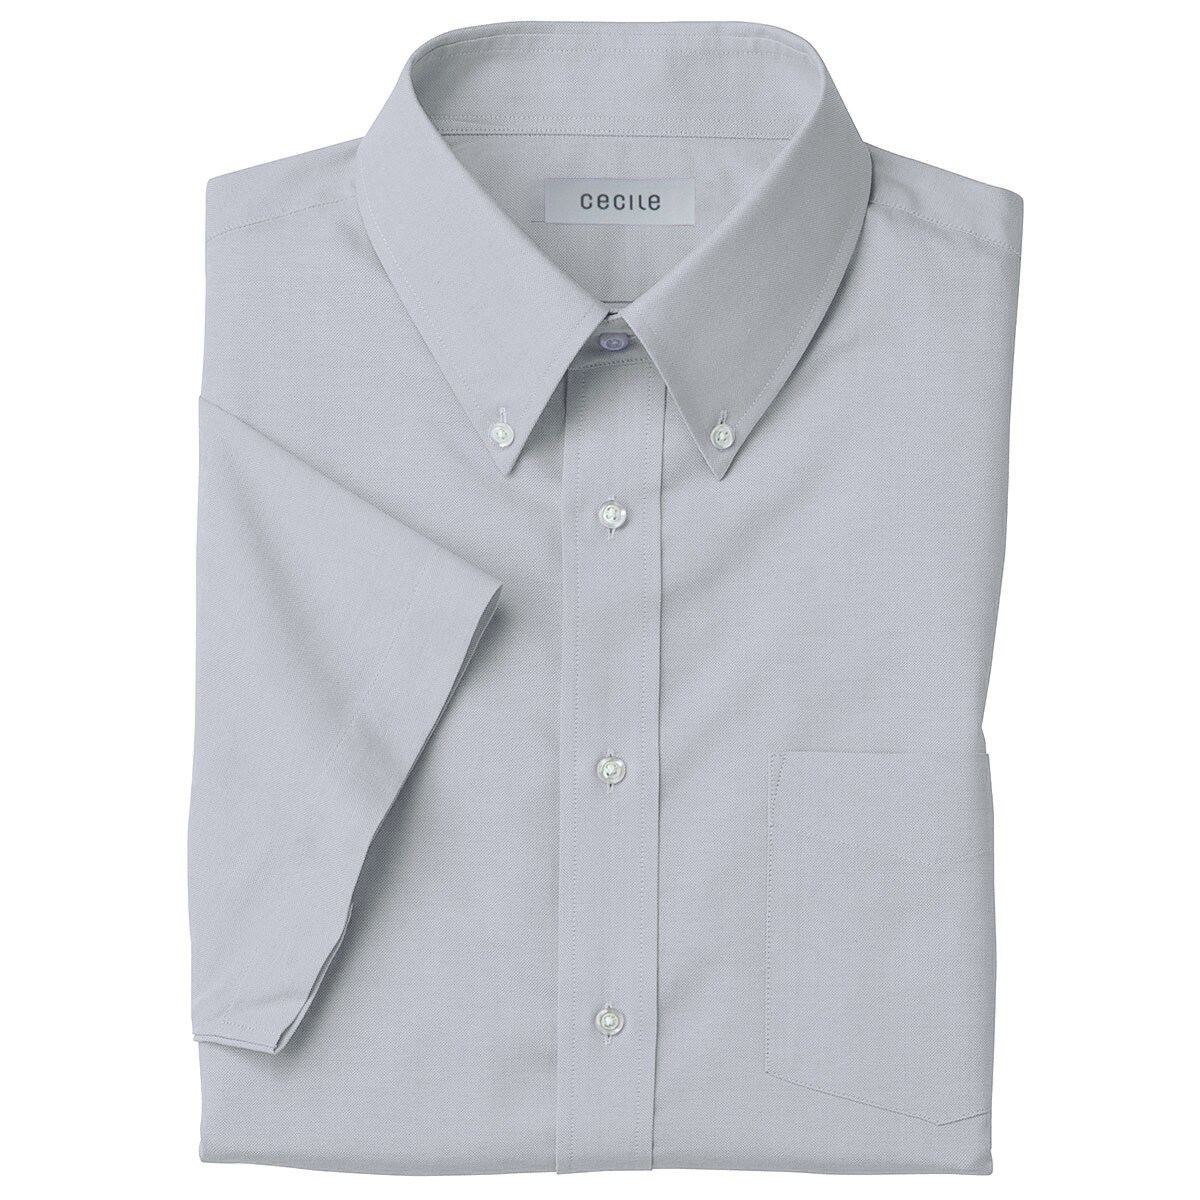 形態安定ボタンダウンYシャツ(半袖) - ファッション通販ならセシール